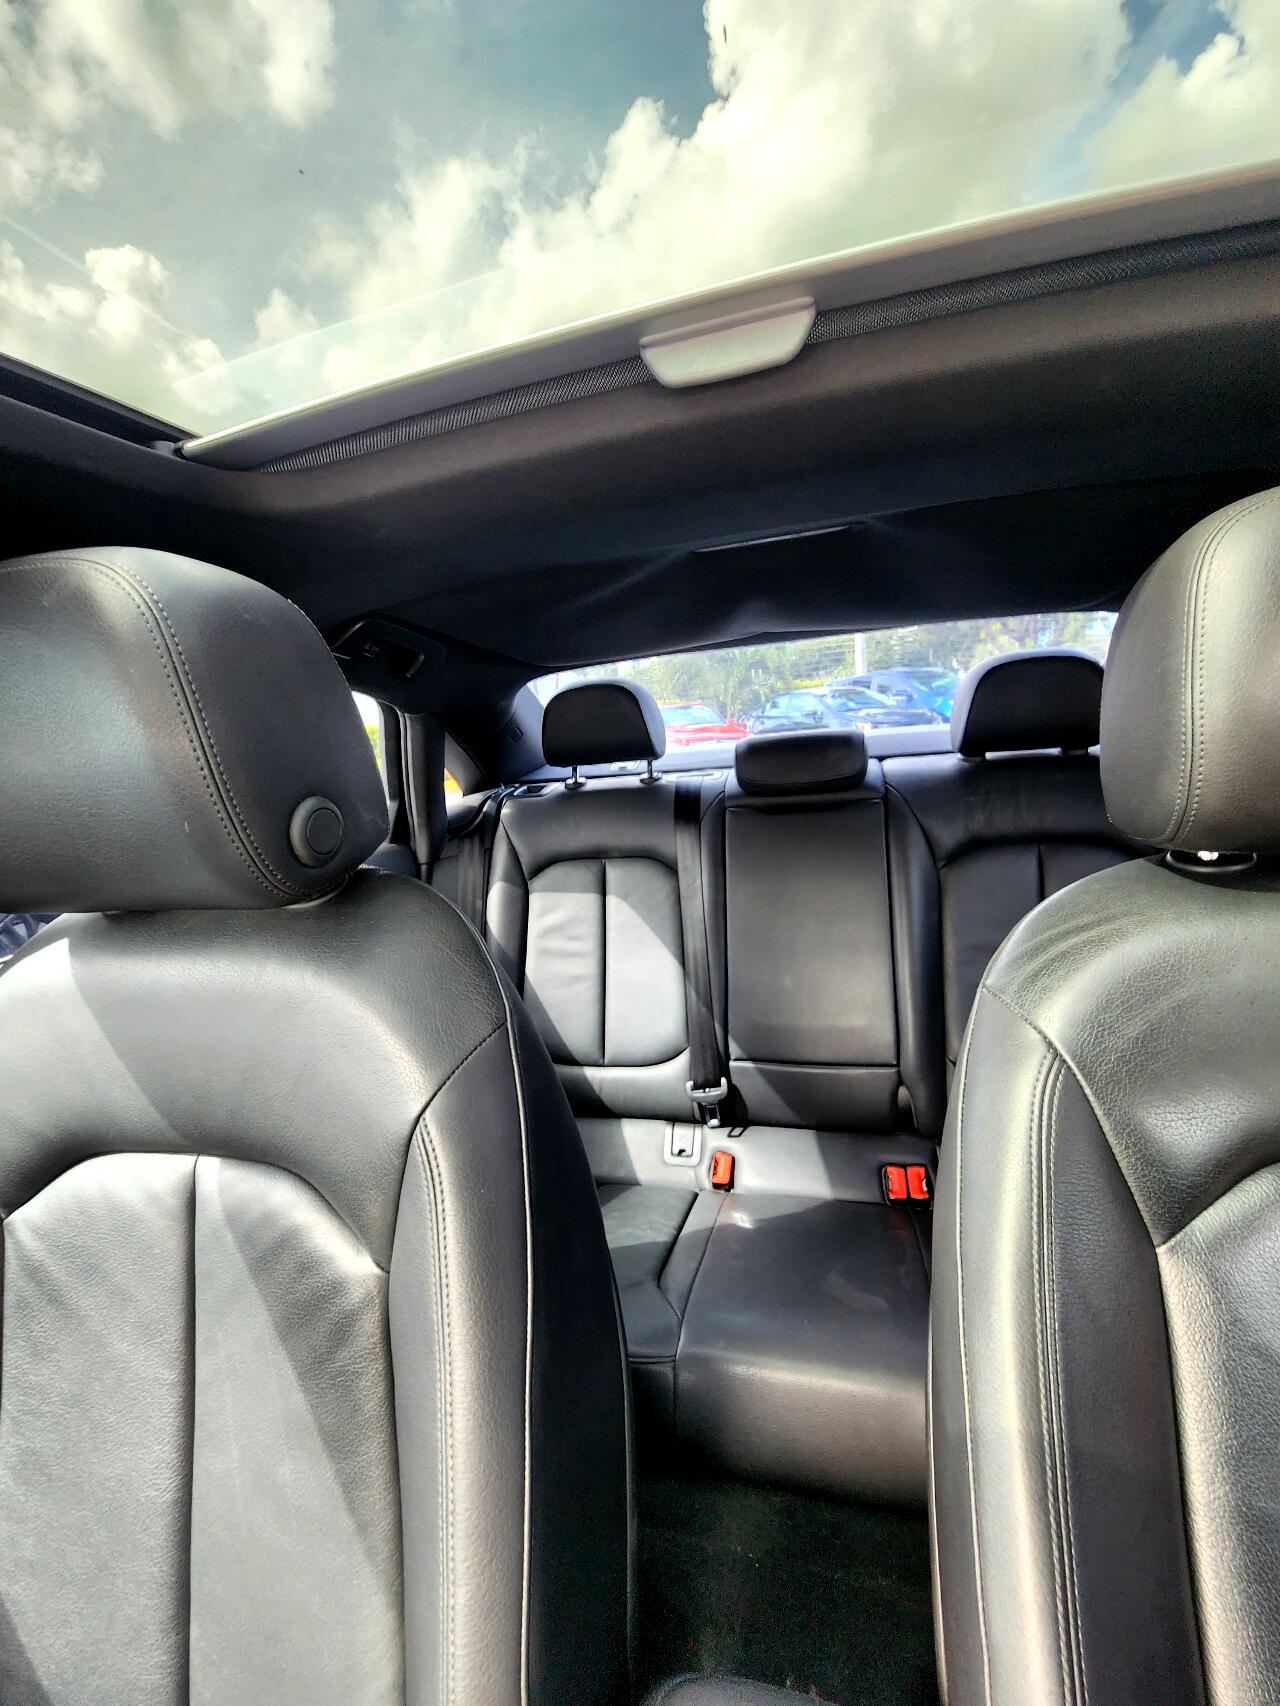 2015 AUDI A3 Sedan - $14,999